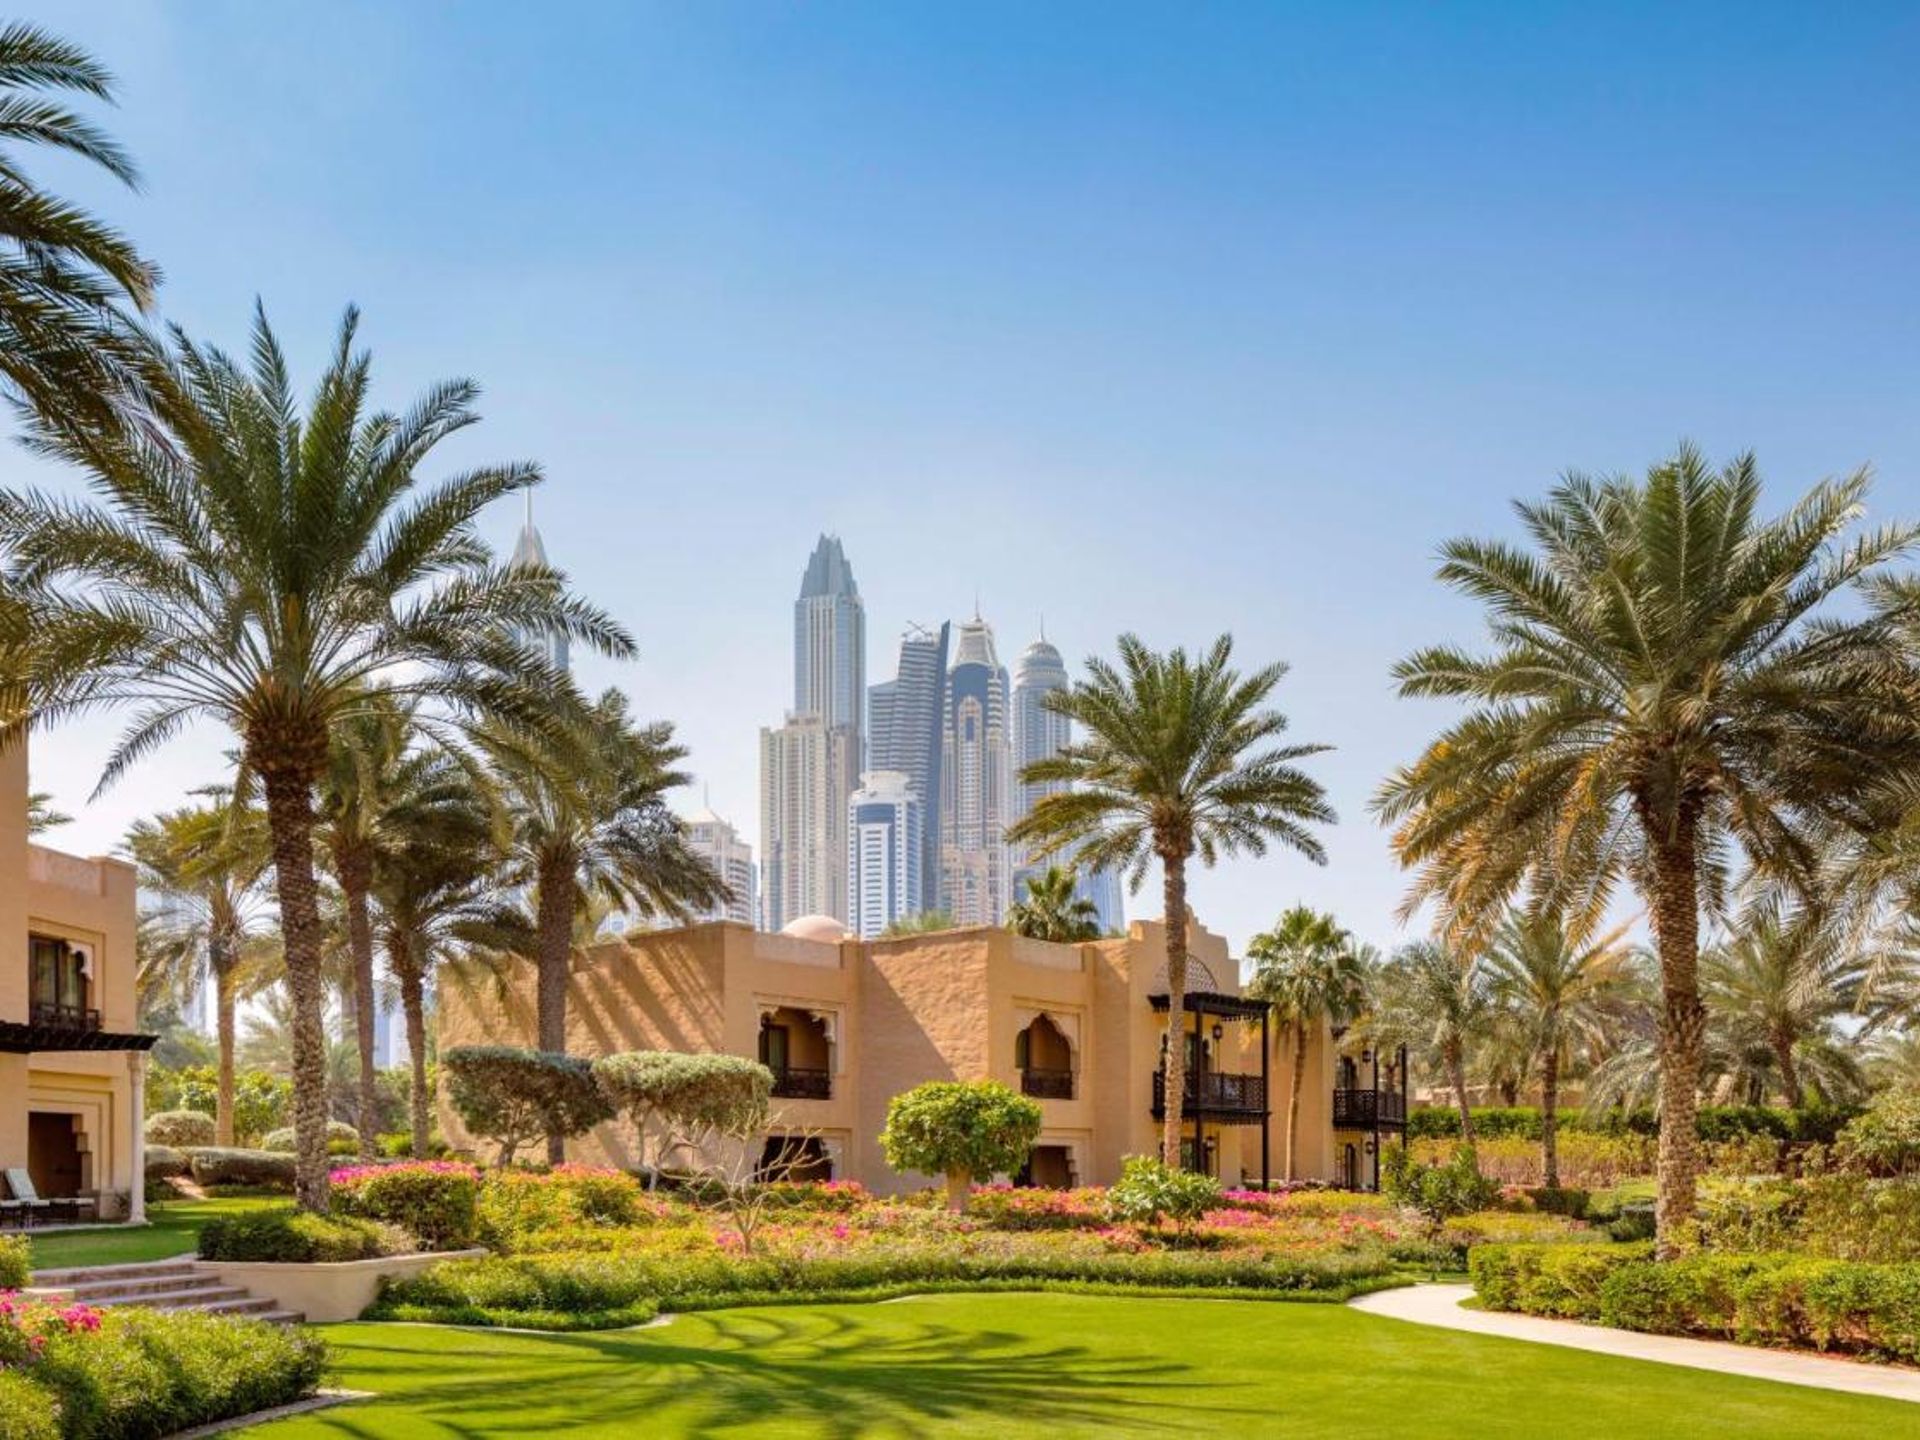 Dubai: confira a nossa seleção dos melhores hotéis da capital do luxo árabe